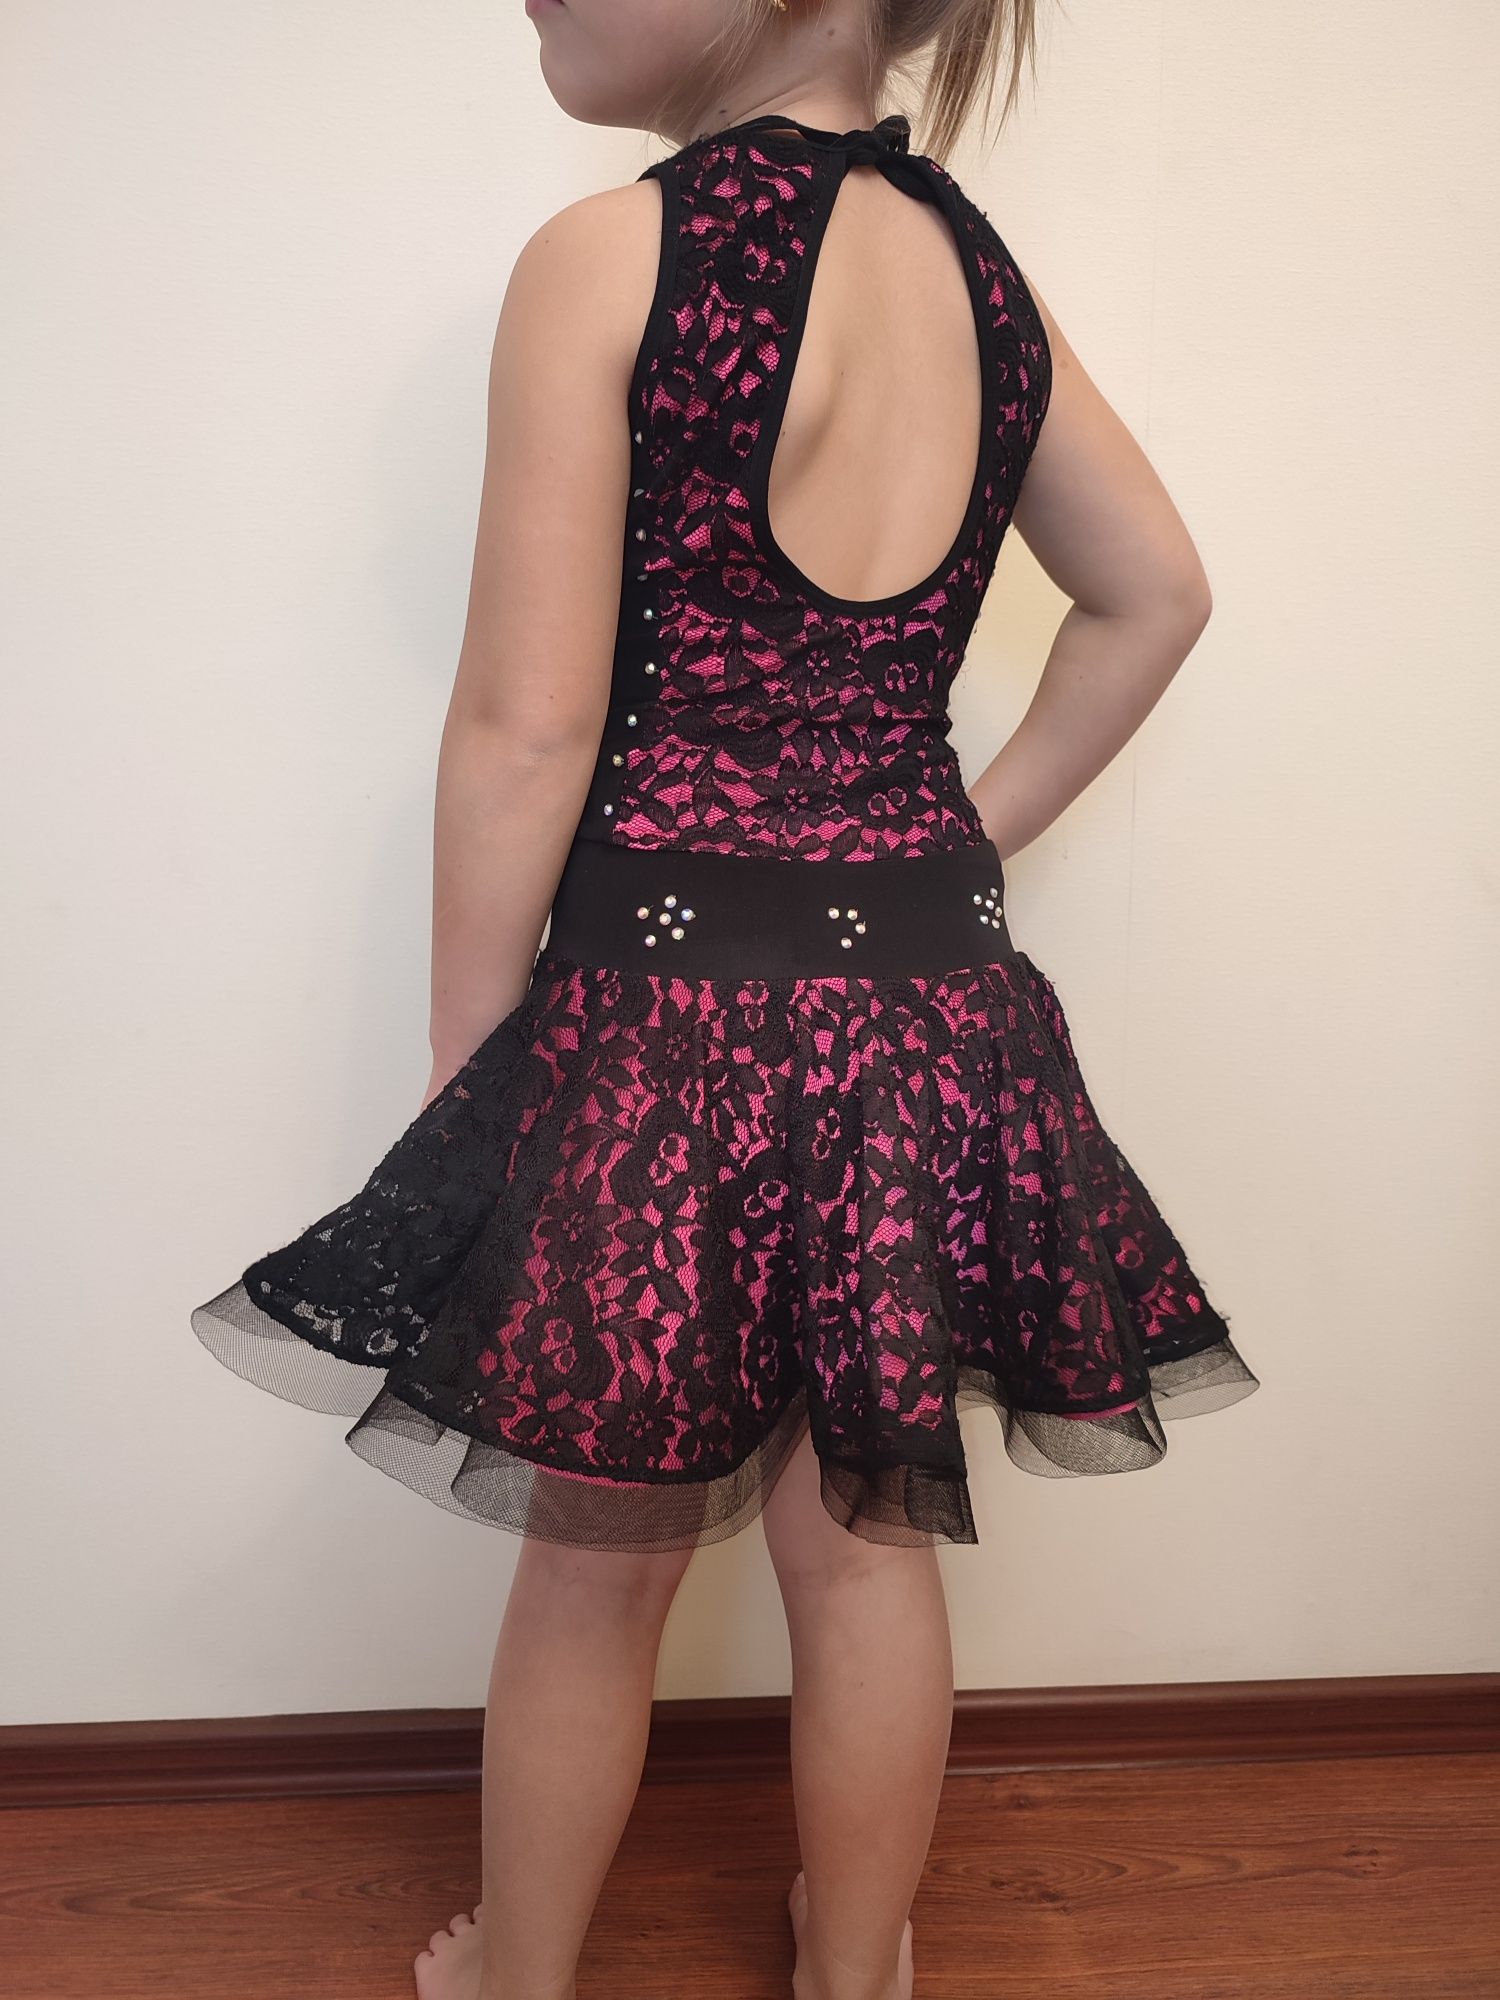 Танцевальное платье на девочку 116-123 см. Купальник платье для танцев